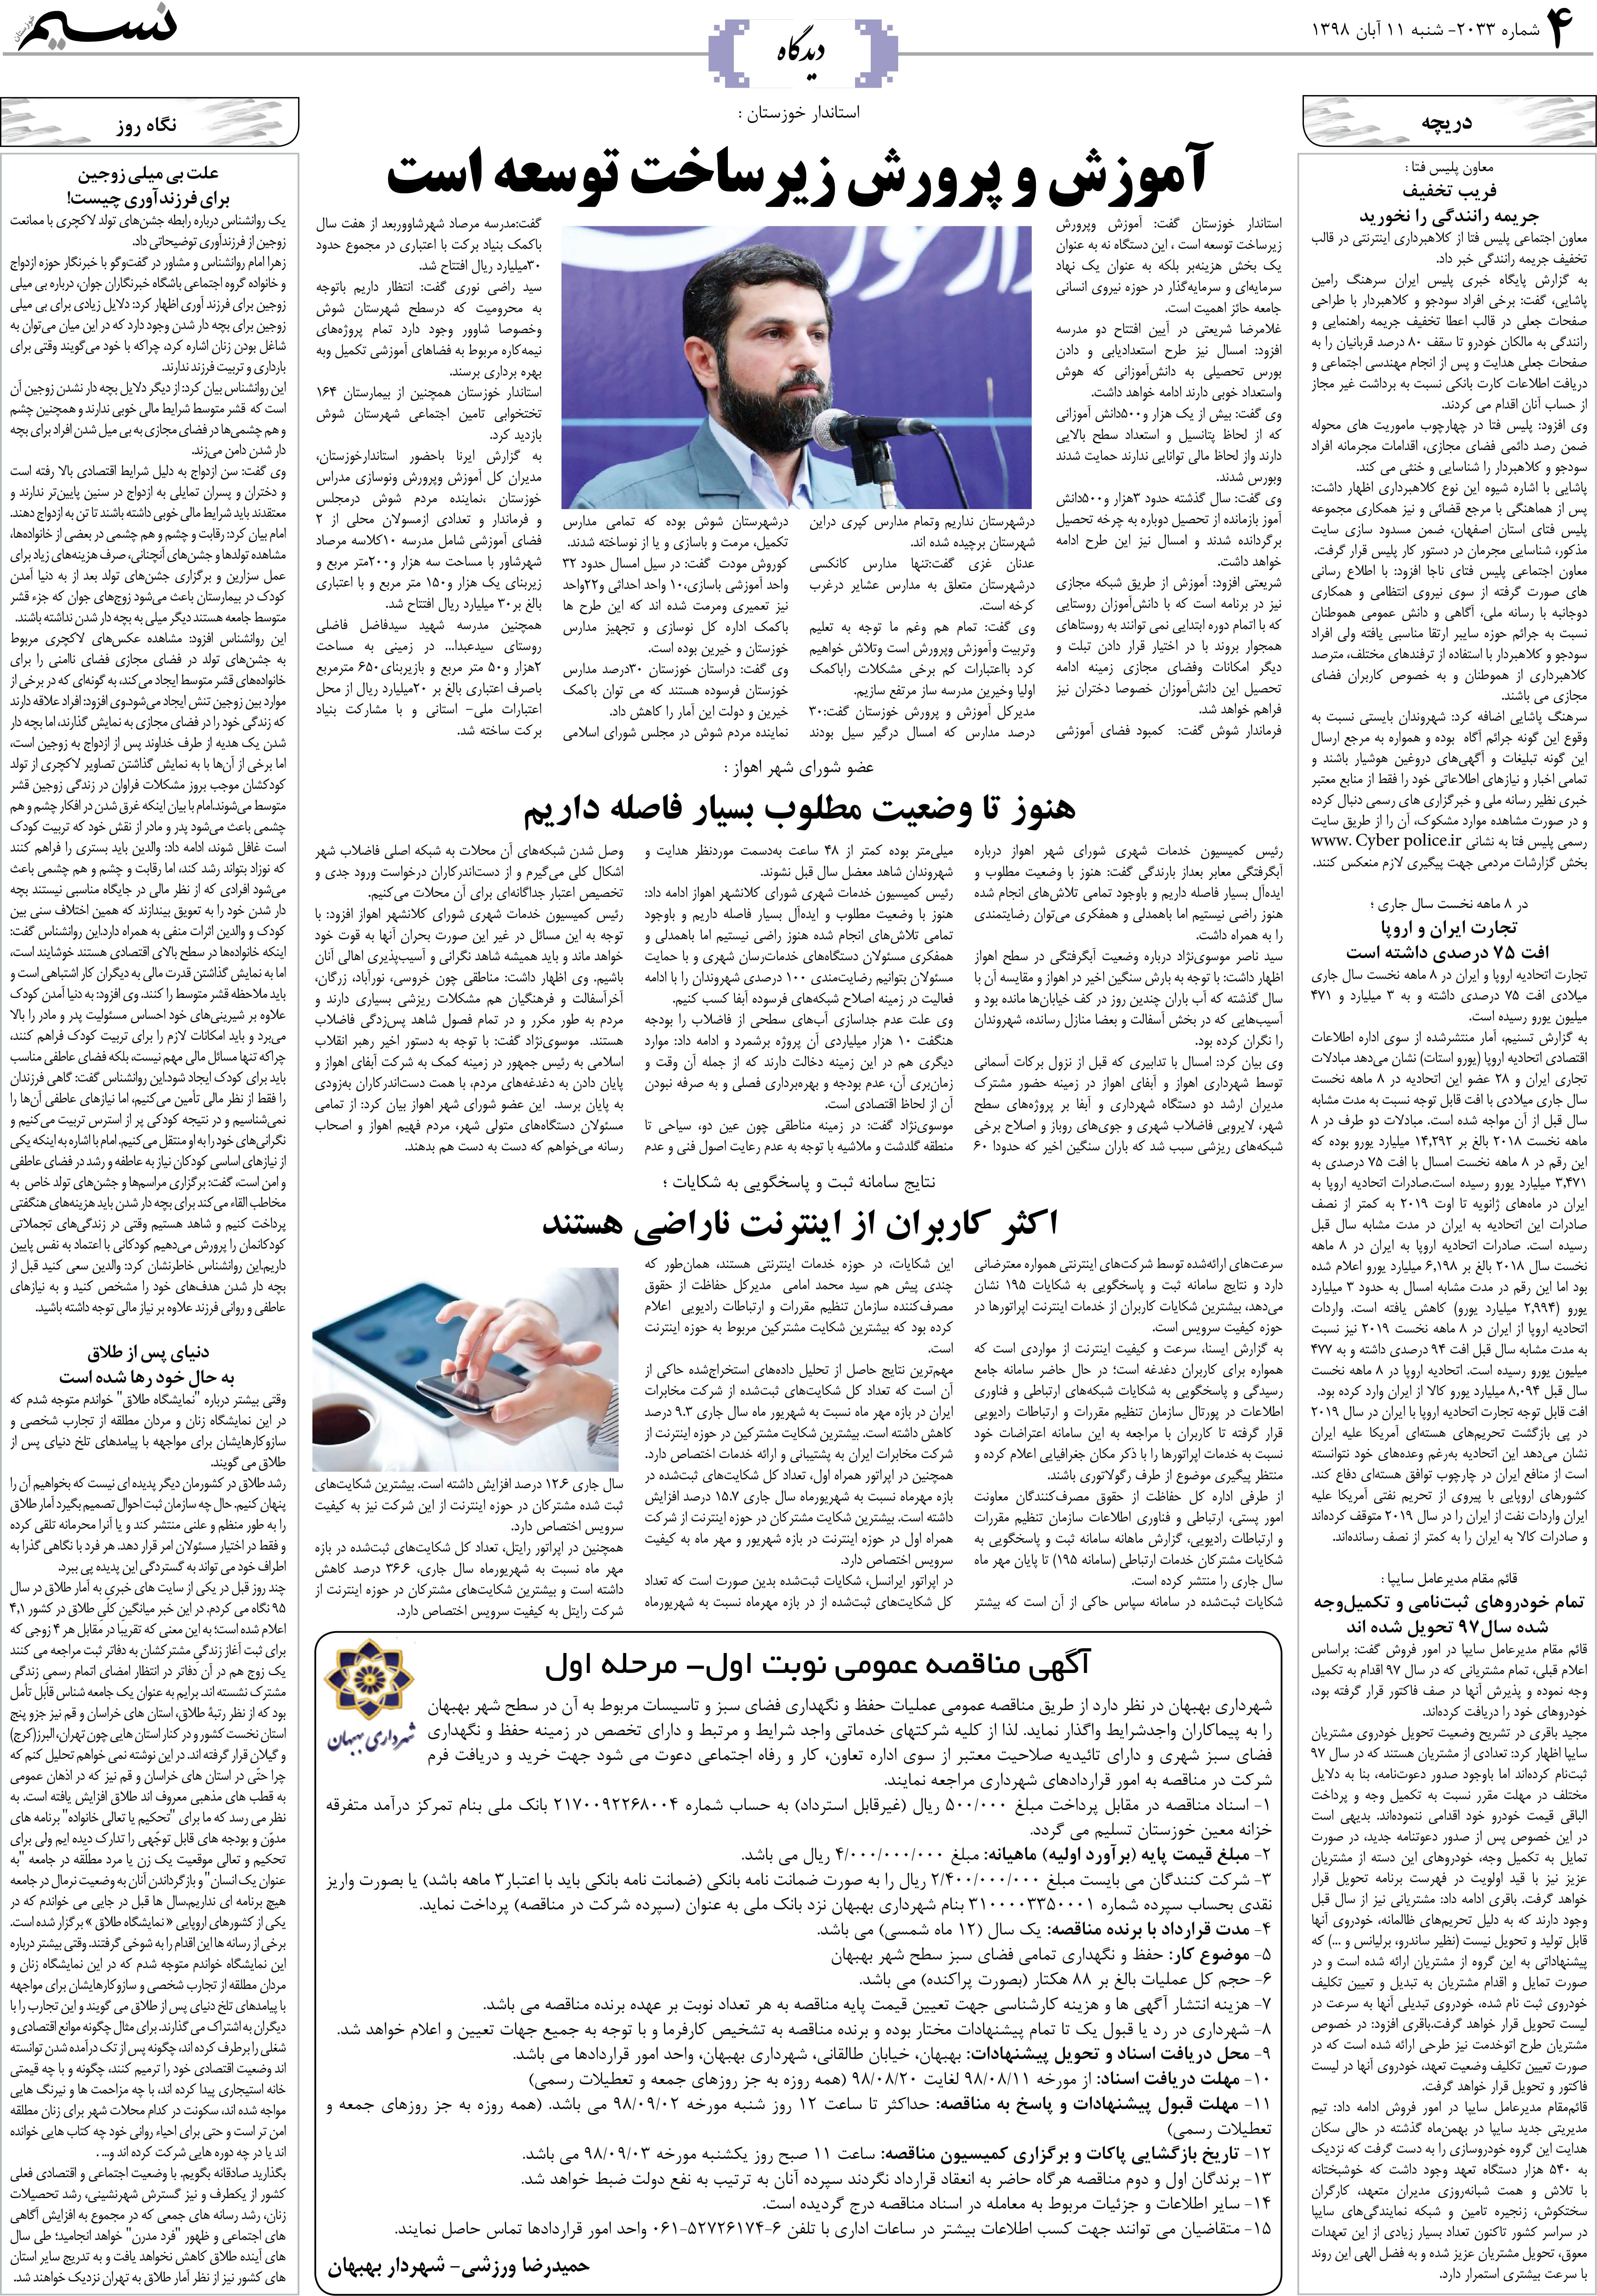 صفحه دیدگاه روزنامه نسیم شماره 2033